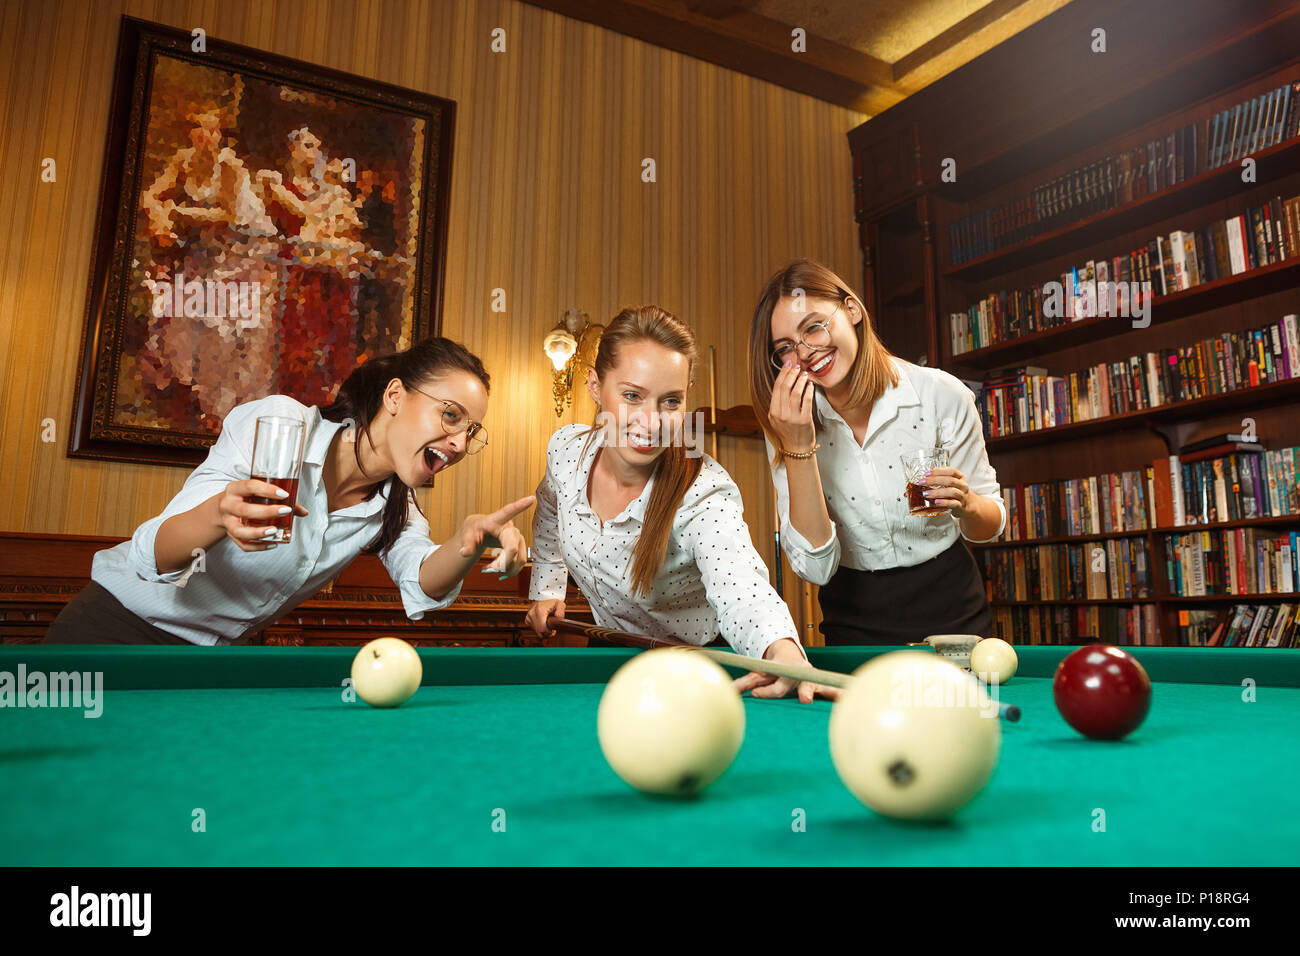 Junge Frauen spielen Billard im Büro nach der Arbeit Stockfotografie - Alamy